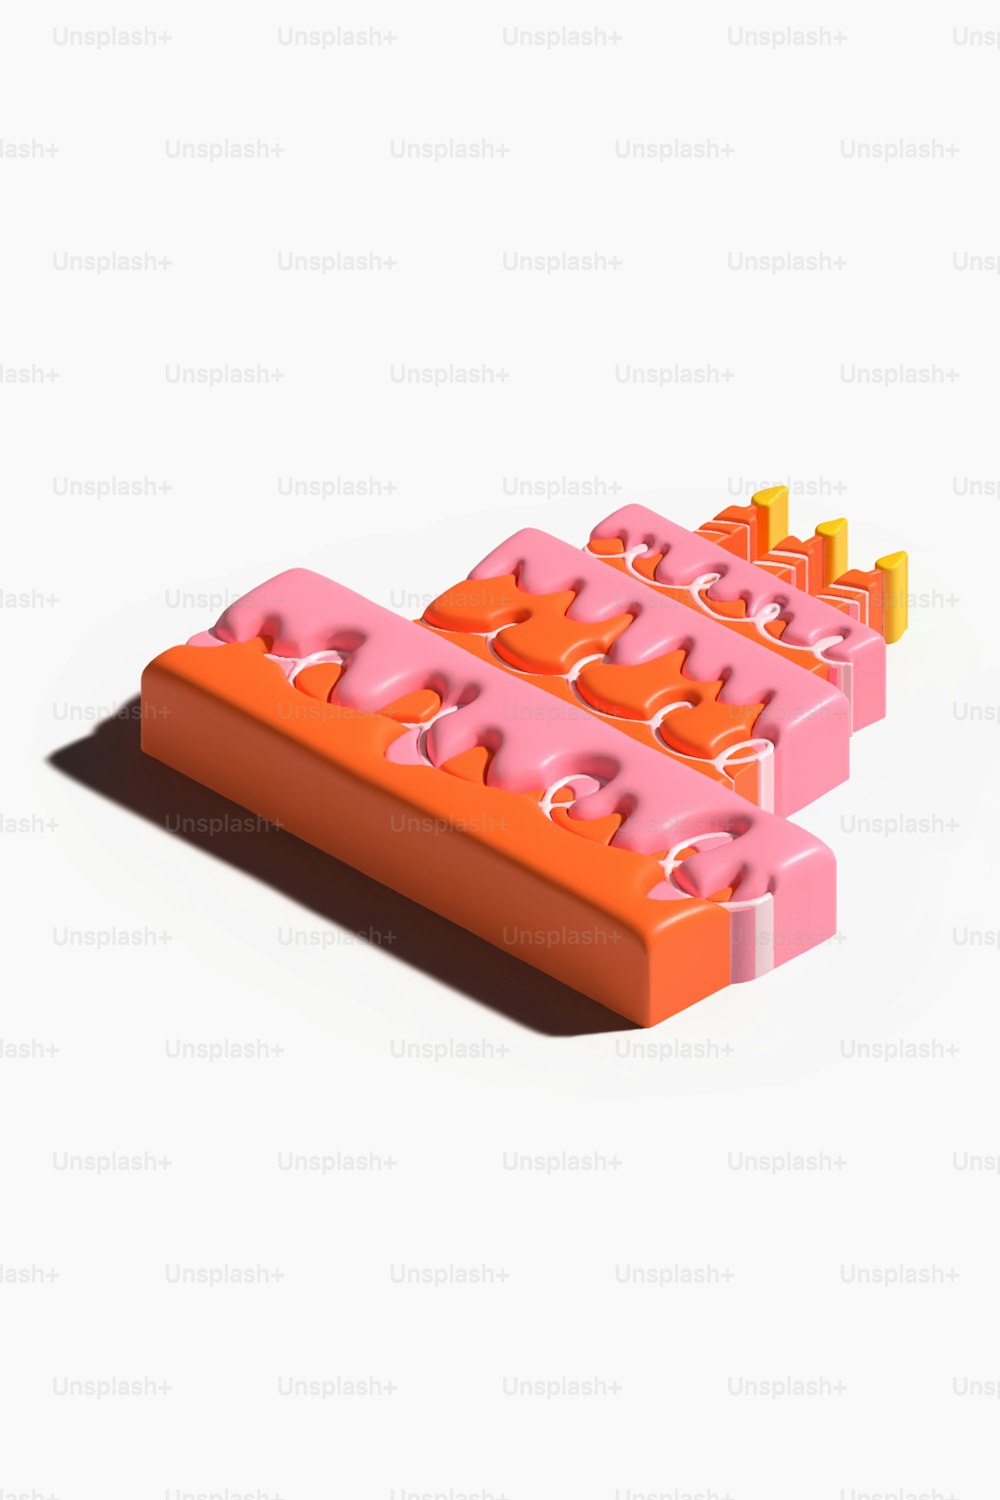 Ein paar orangefarbene und rosa Legos sitzen übereinander